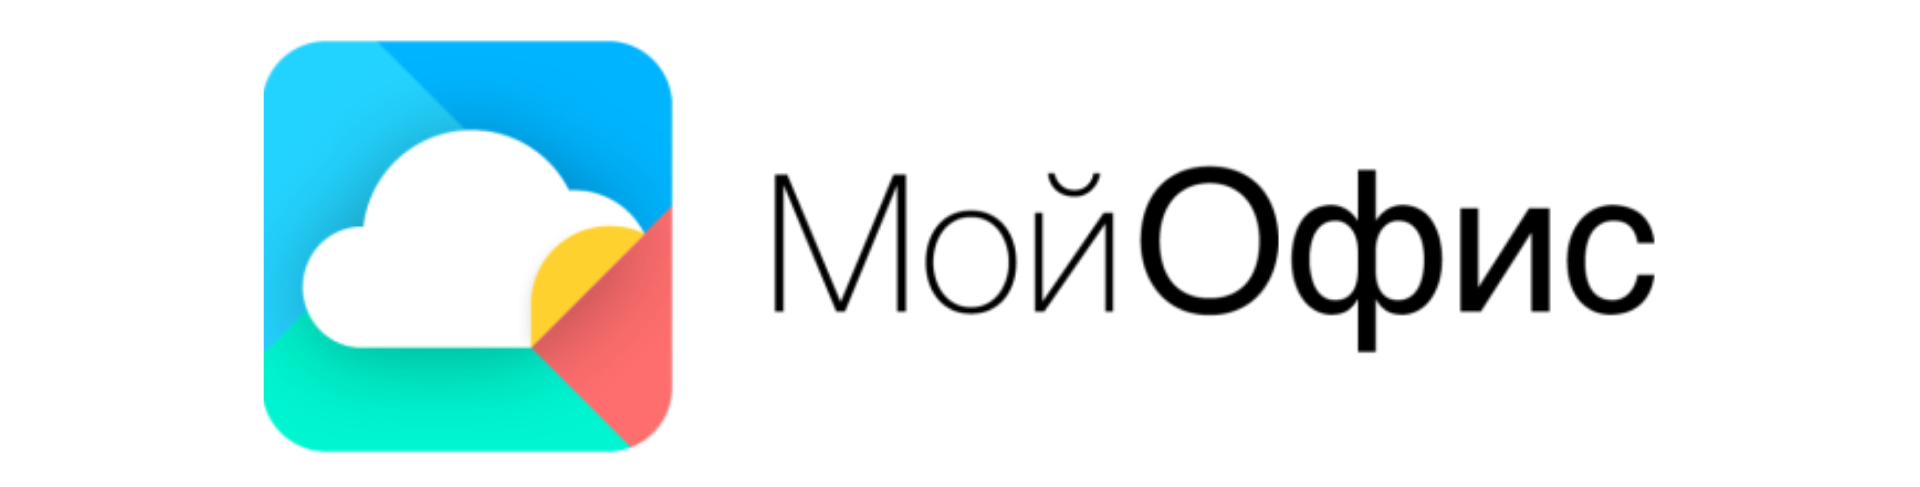 МойОфис объявил о запуске Squadus 1.2